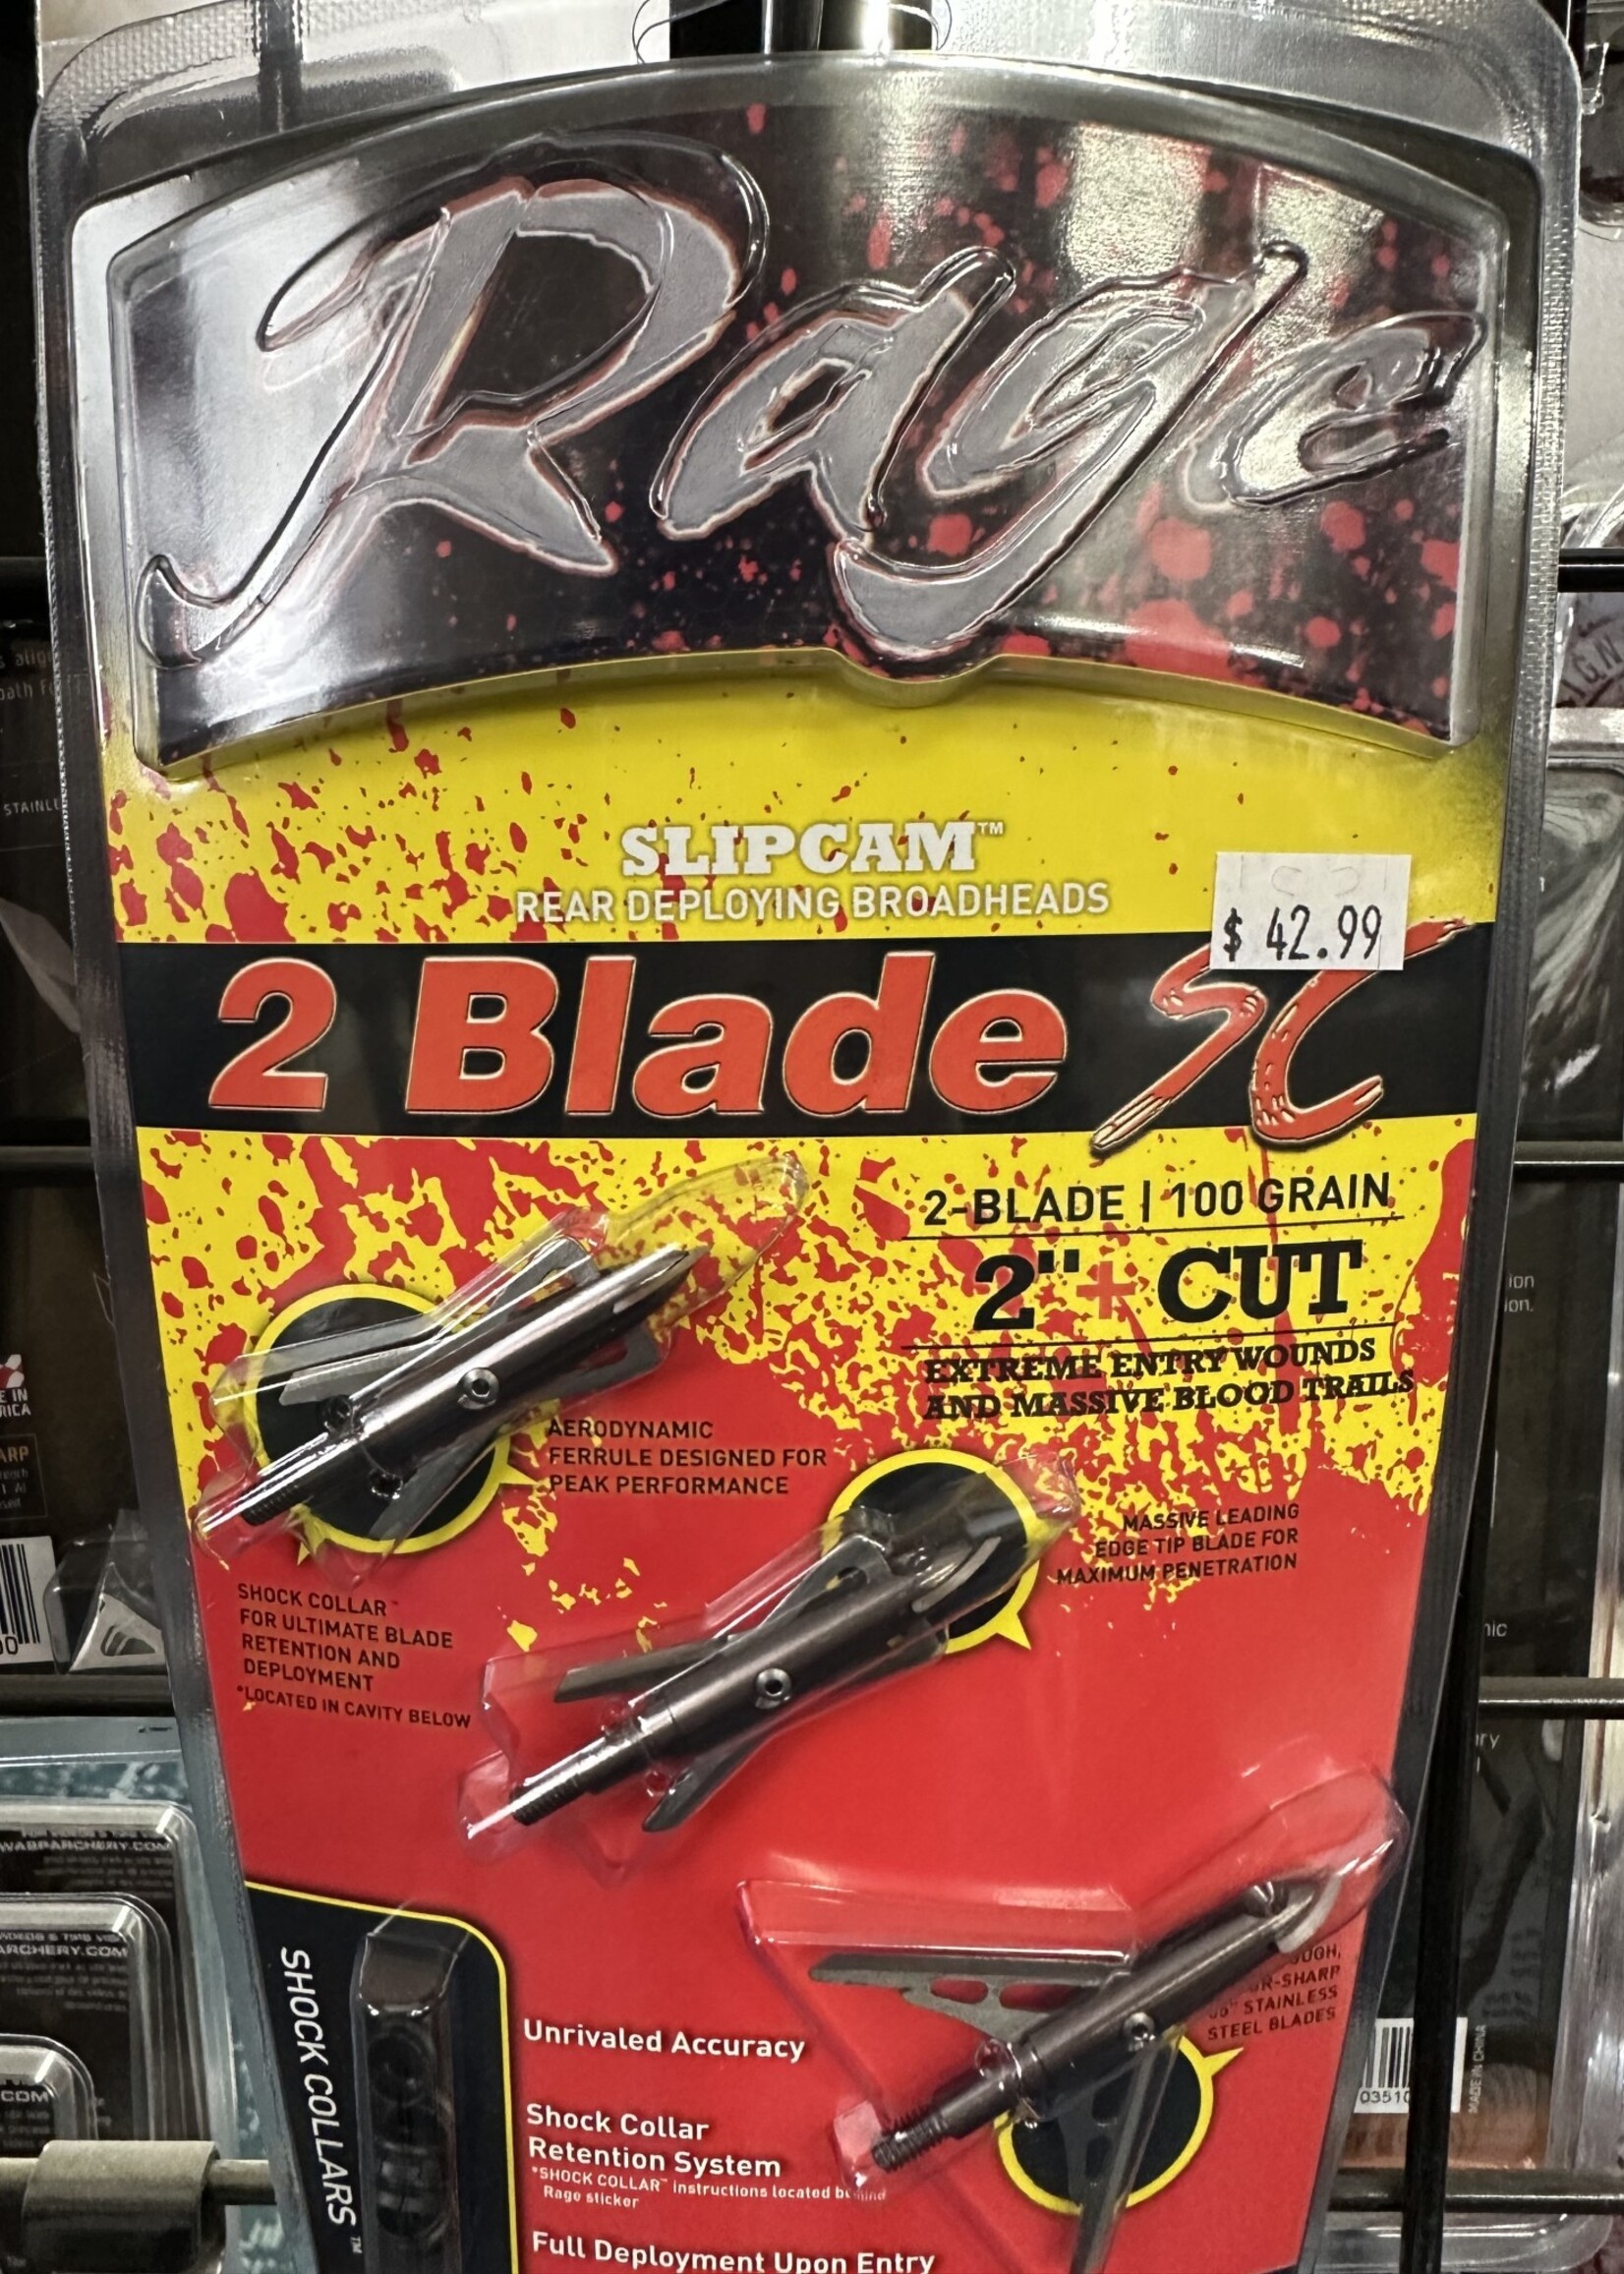 RAGE Rage Slipcam 2 Blade SC 2"